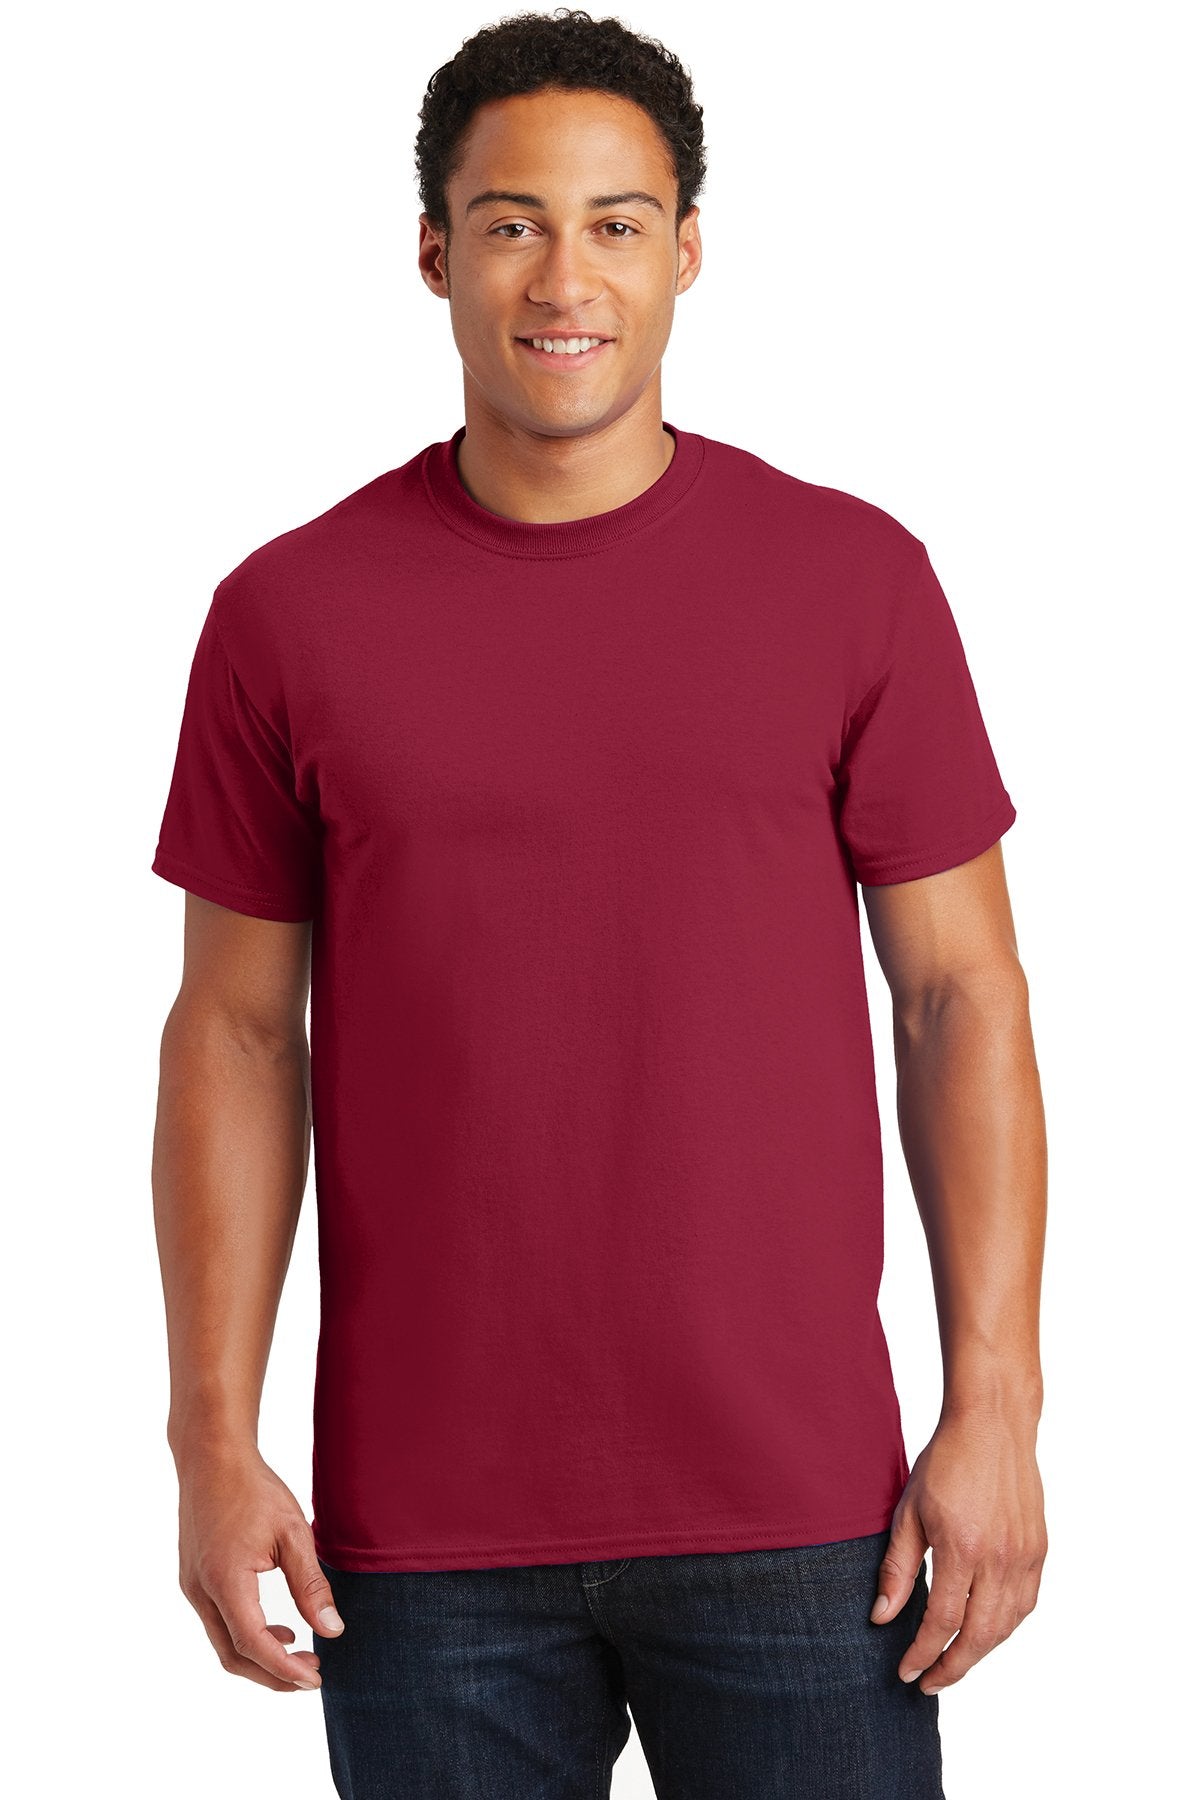 gildan ultra cotton t shirt 2000 cardinal red